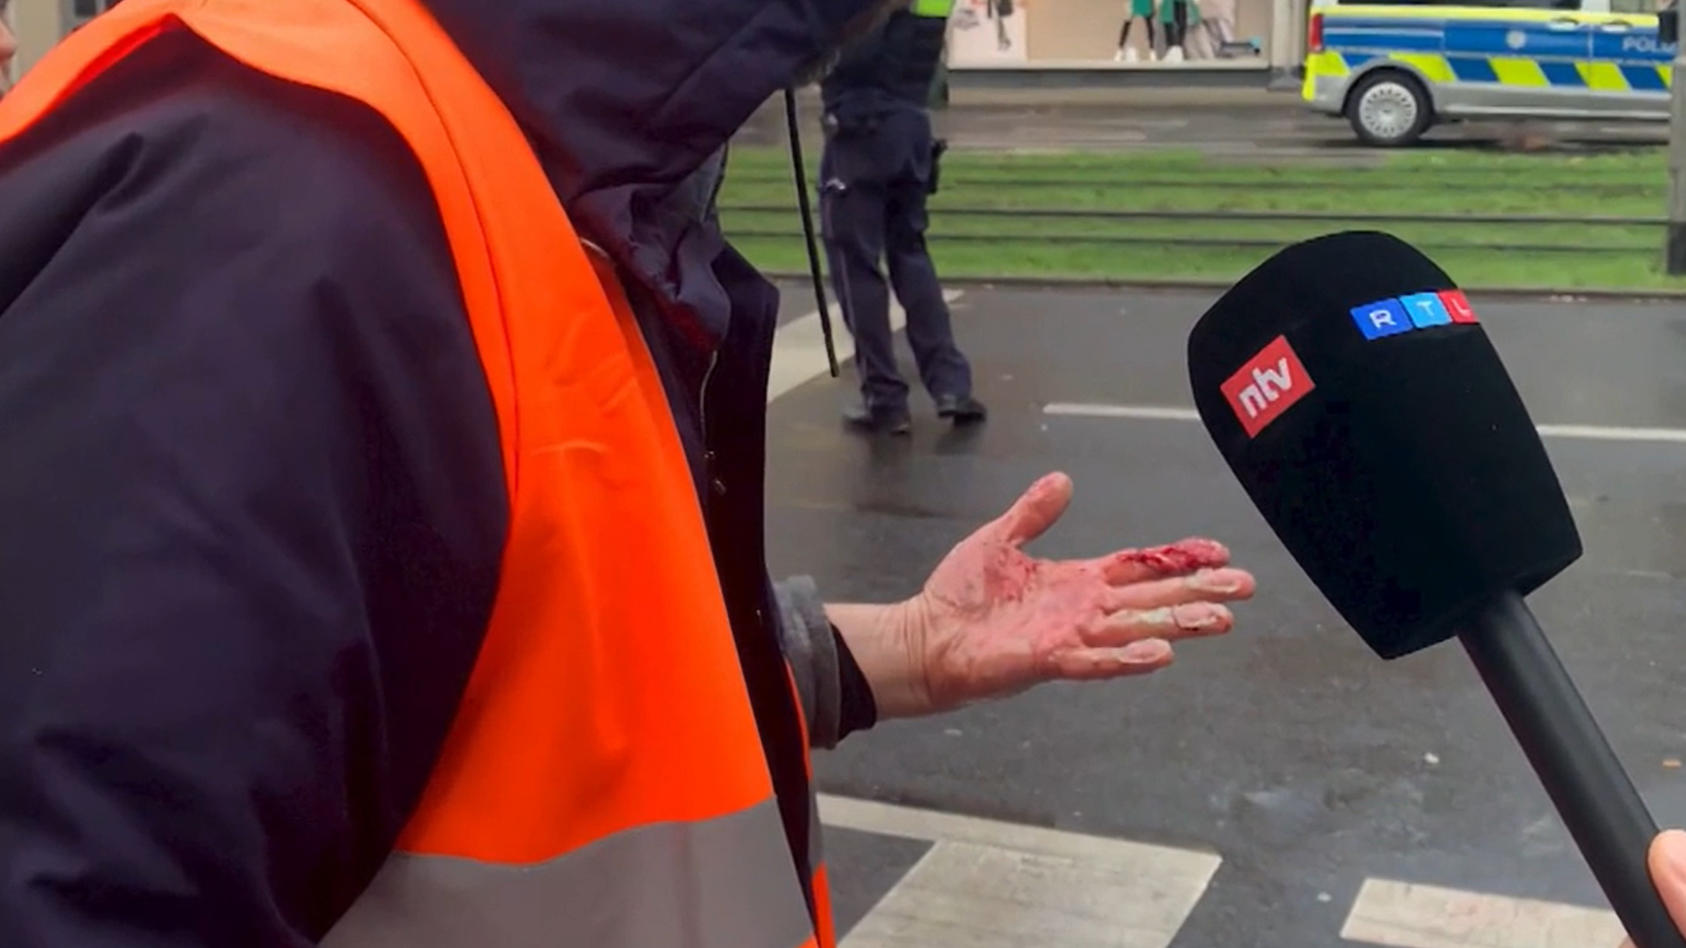 Klimakleber von Straße gerissen - jetzt blutet seine Hand Protest in Köln